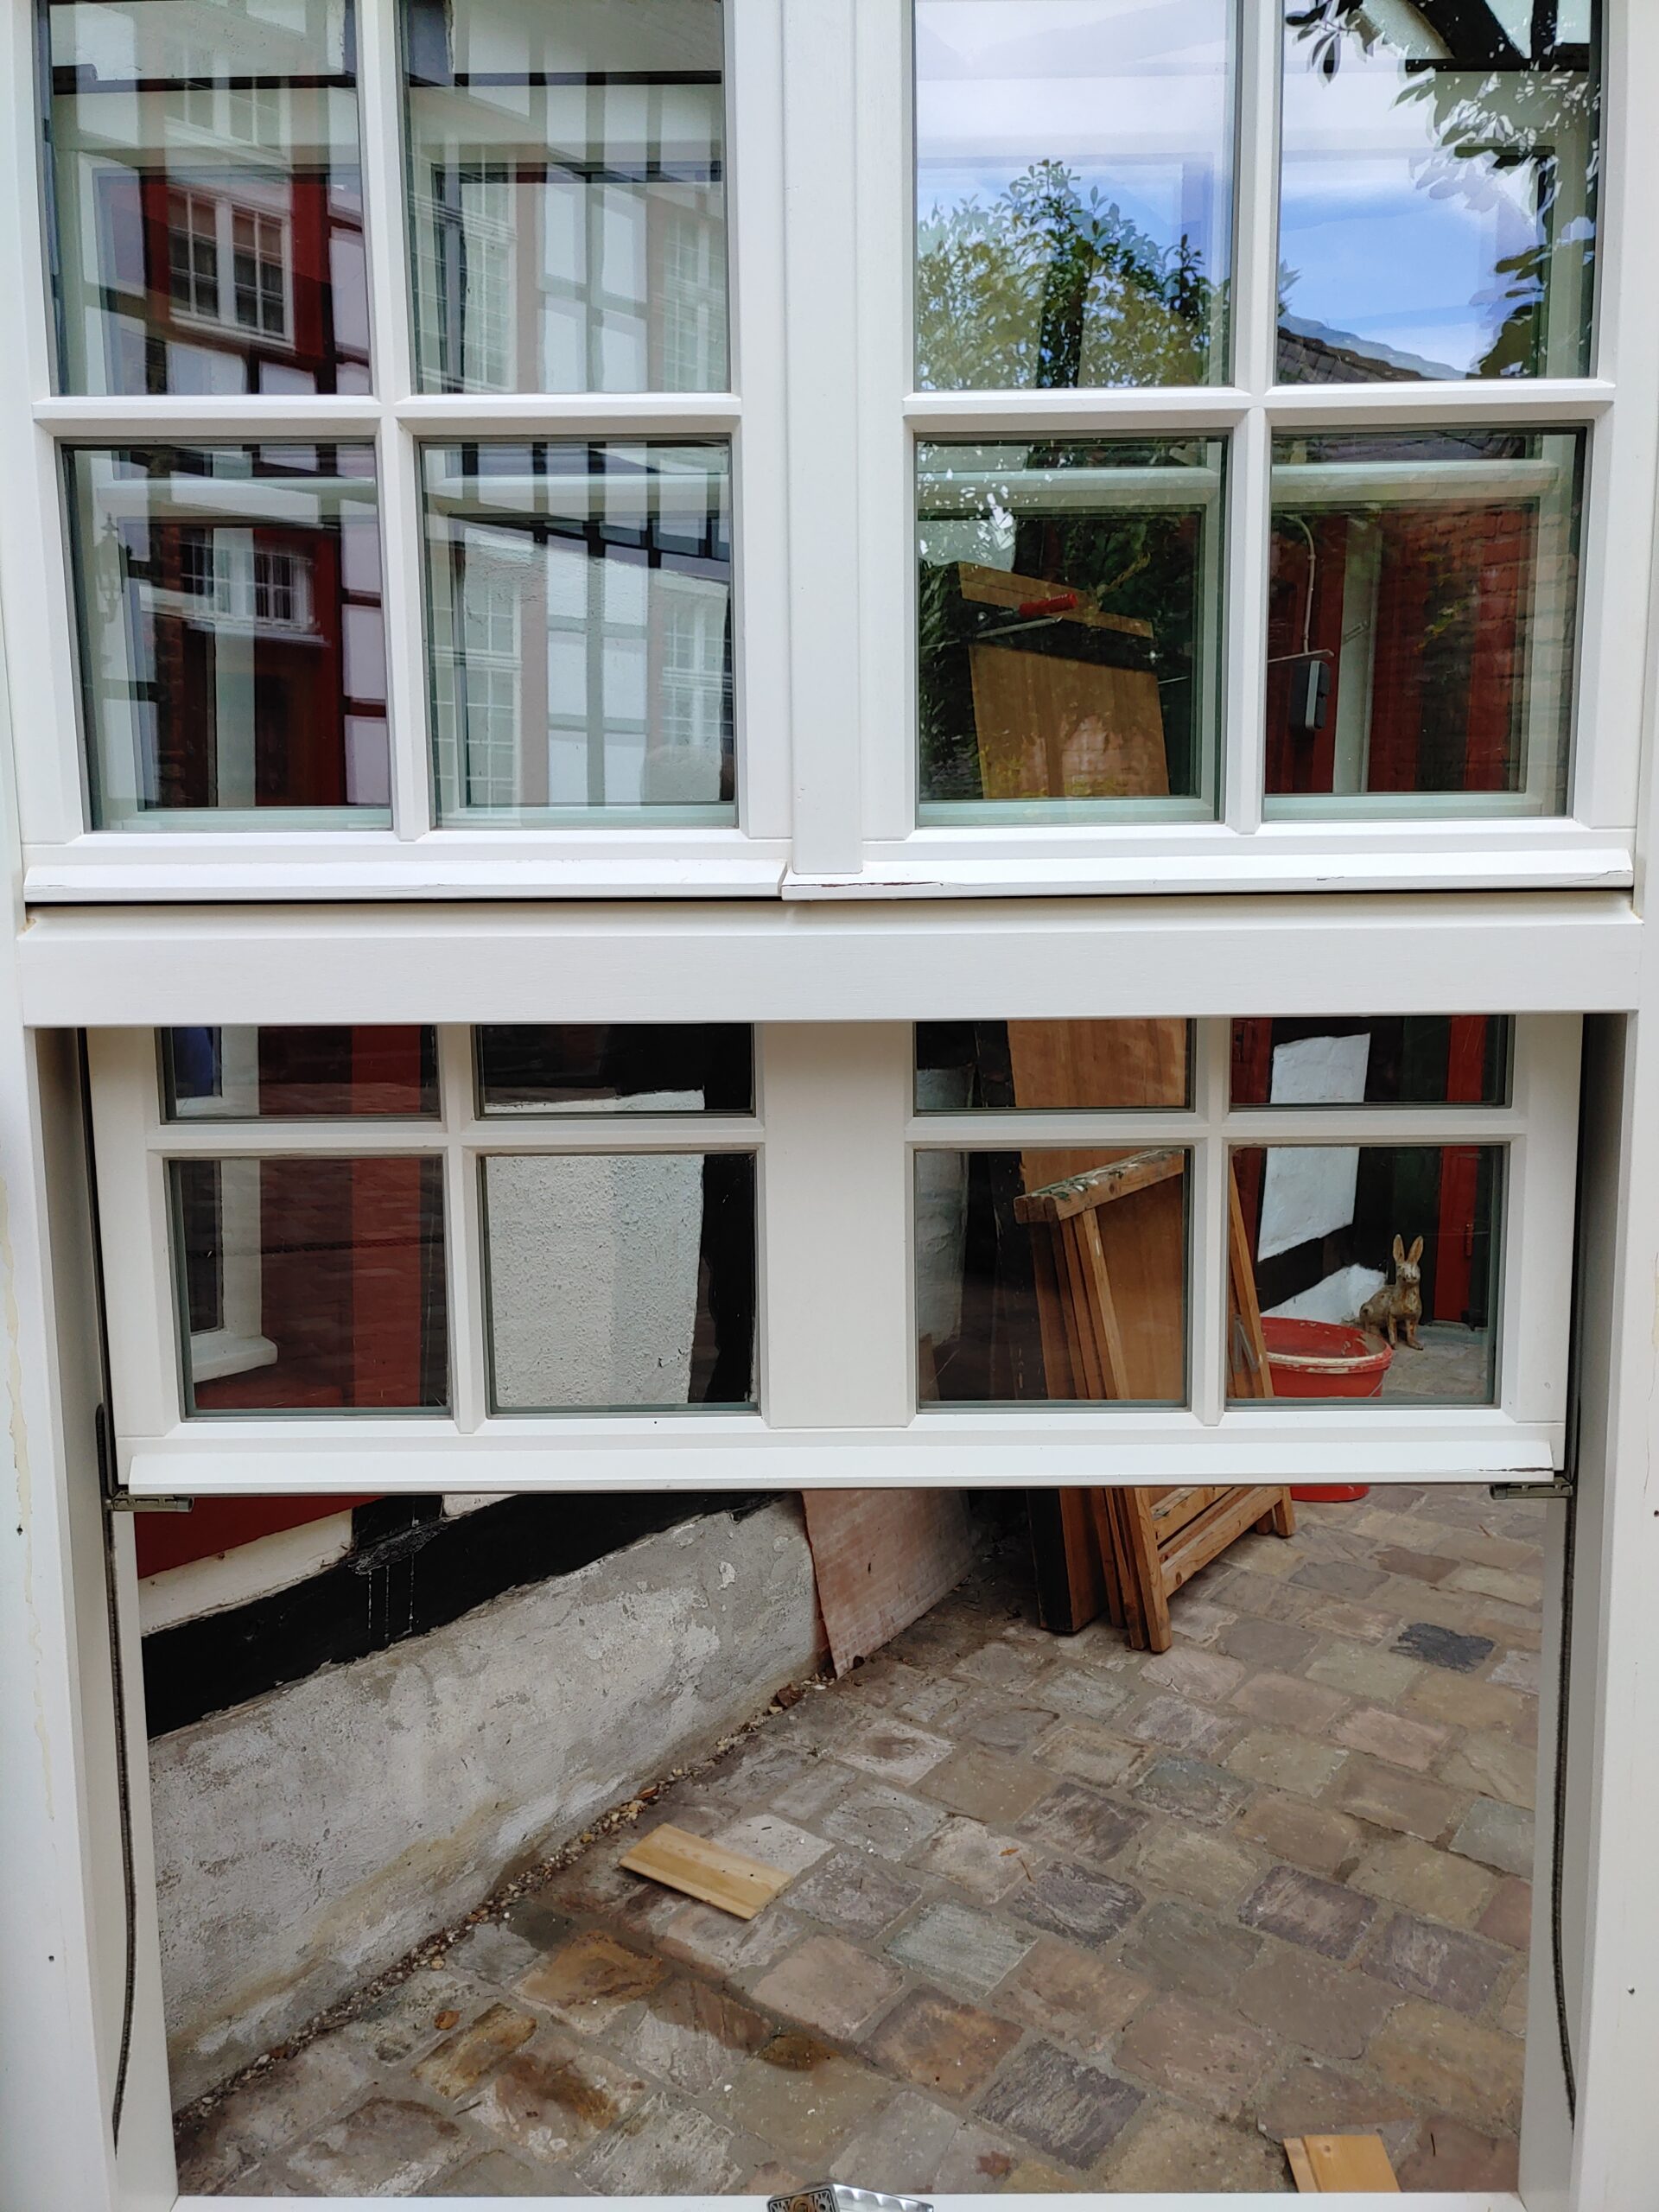 Holz-Schiebefenster kaufen  Baustoffe kaufen auf restado